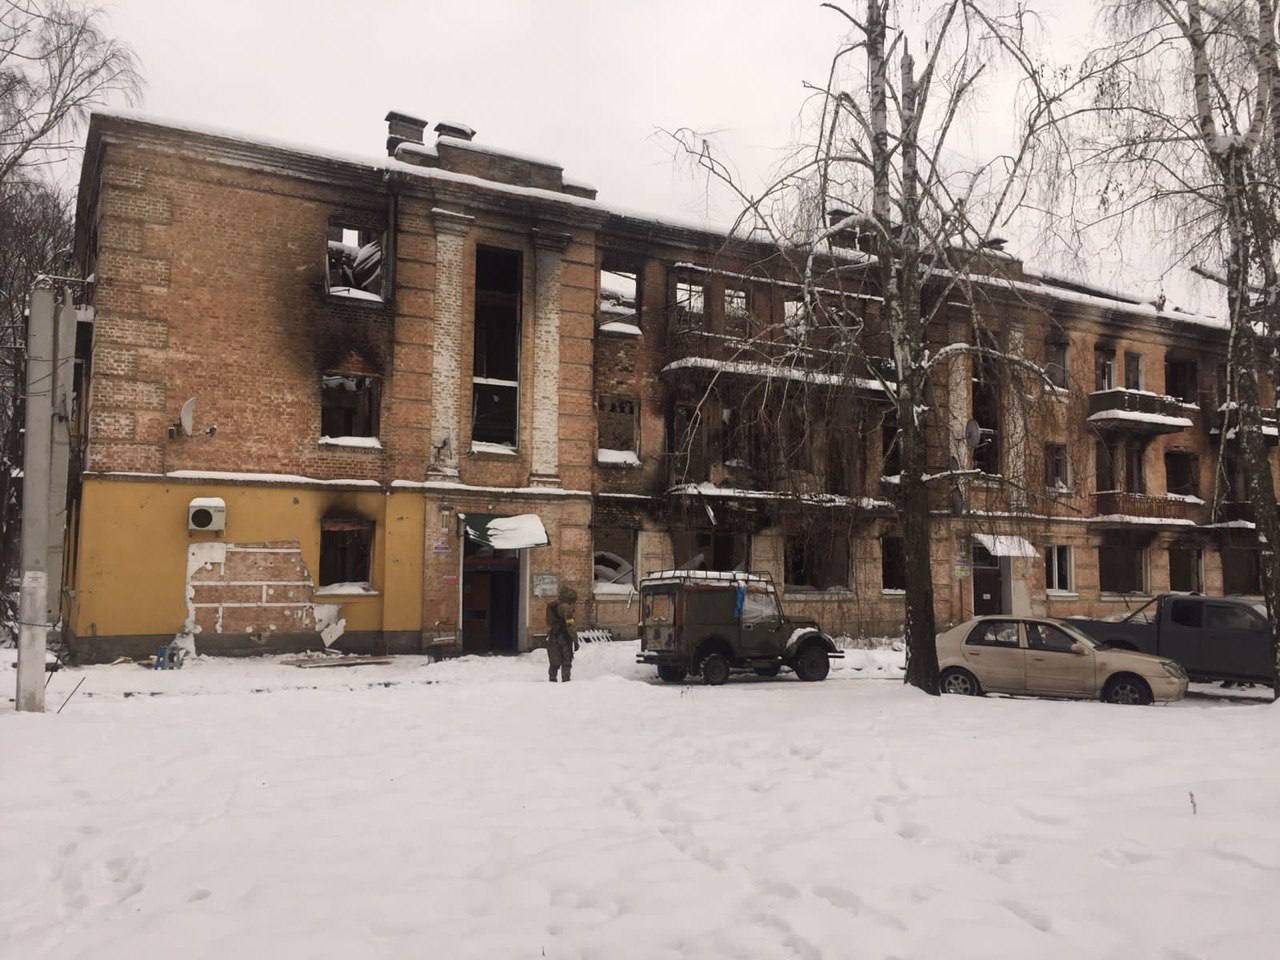 Будинок, на якому було зображено жінку в протигазі, ніким не охоронявся і руйнувався від негоди. Фото: t.me/andrii_nebytov